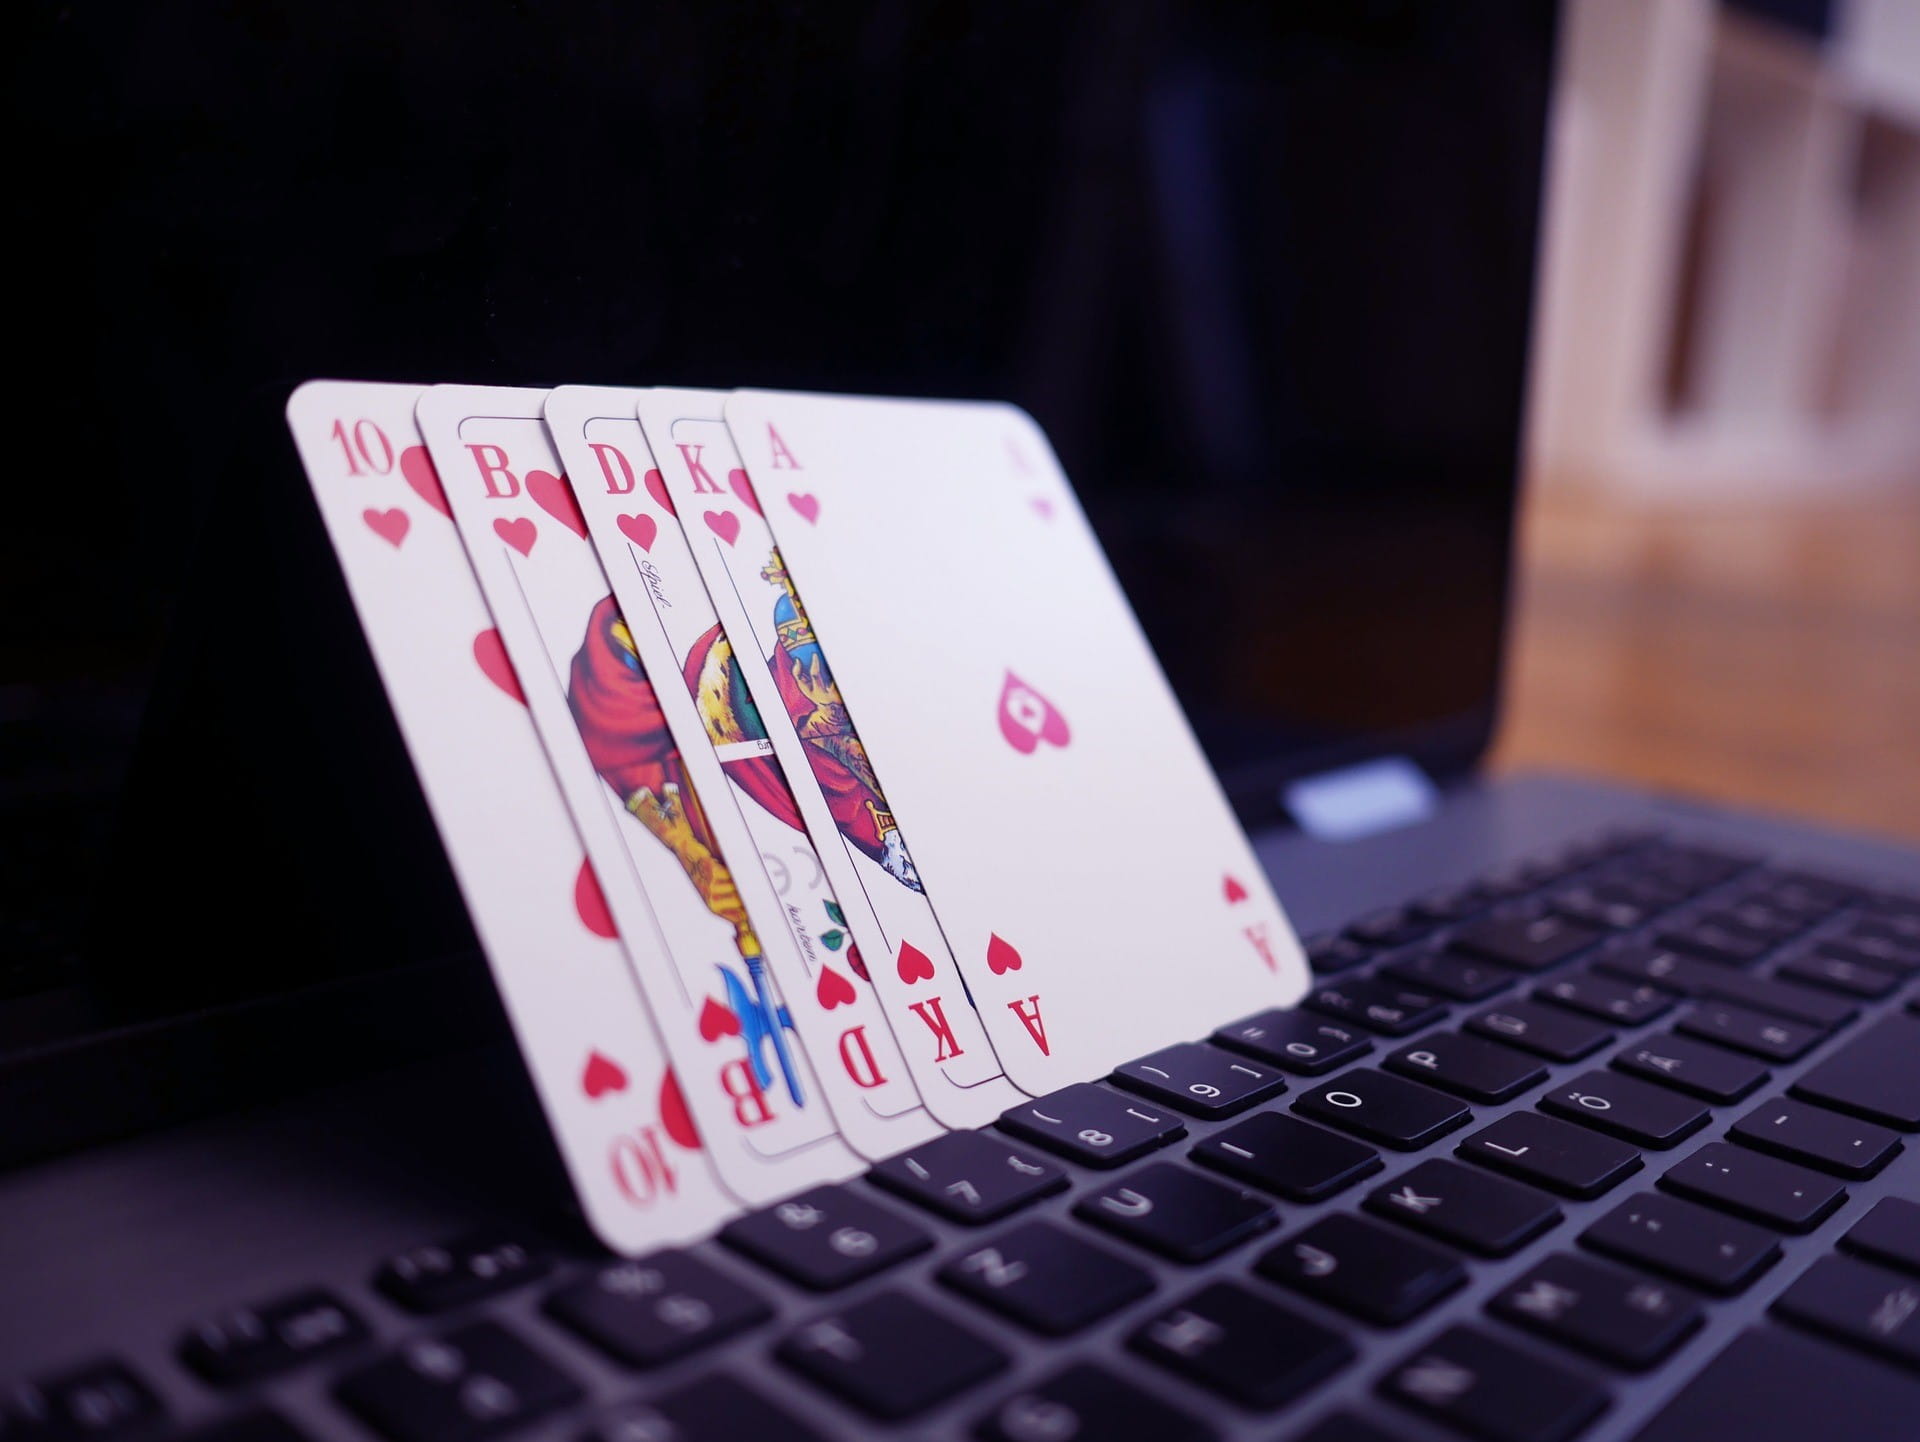 Lima kartu poker ada di laptop terbuka.